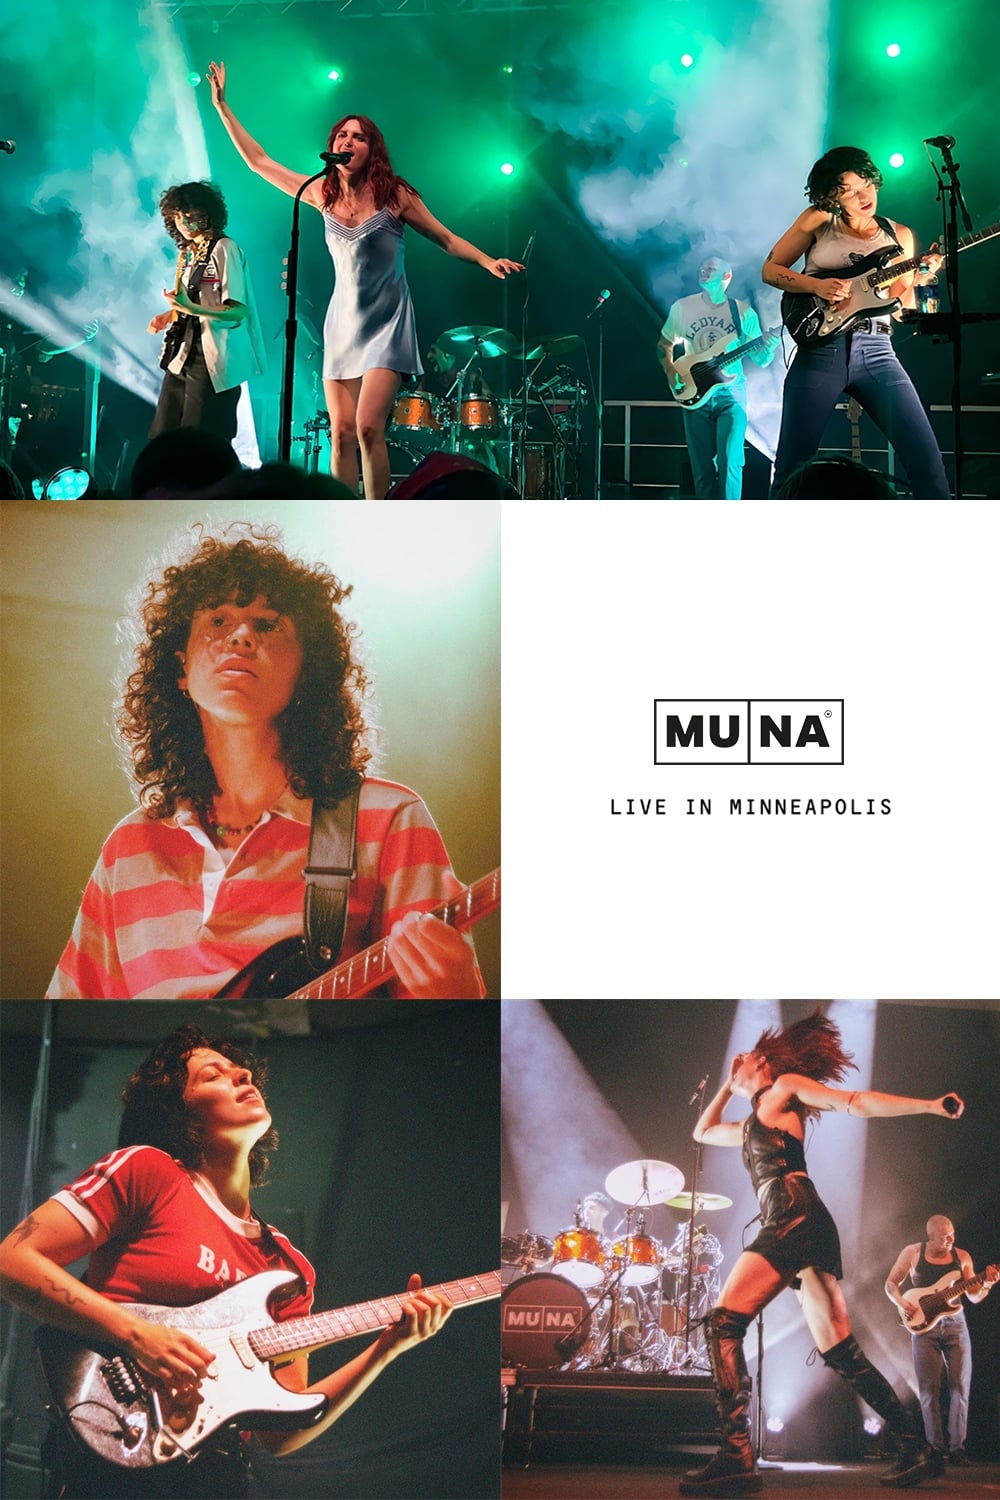 MUNA: Live in Minneapolis